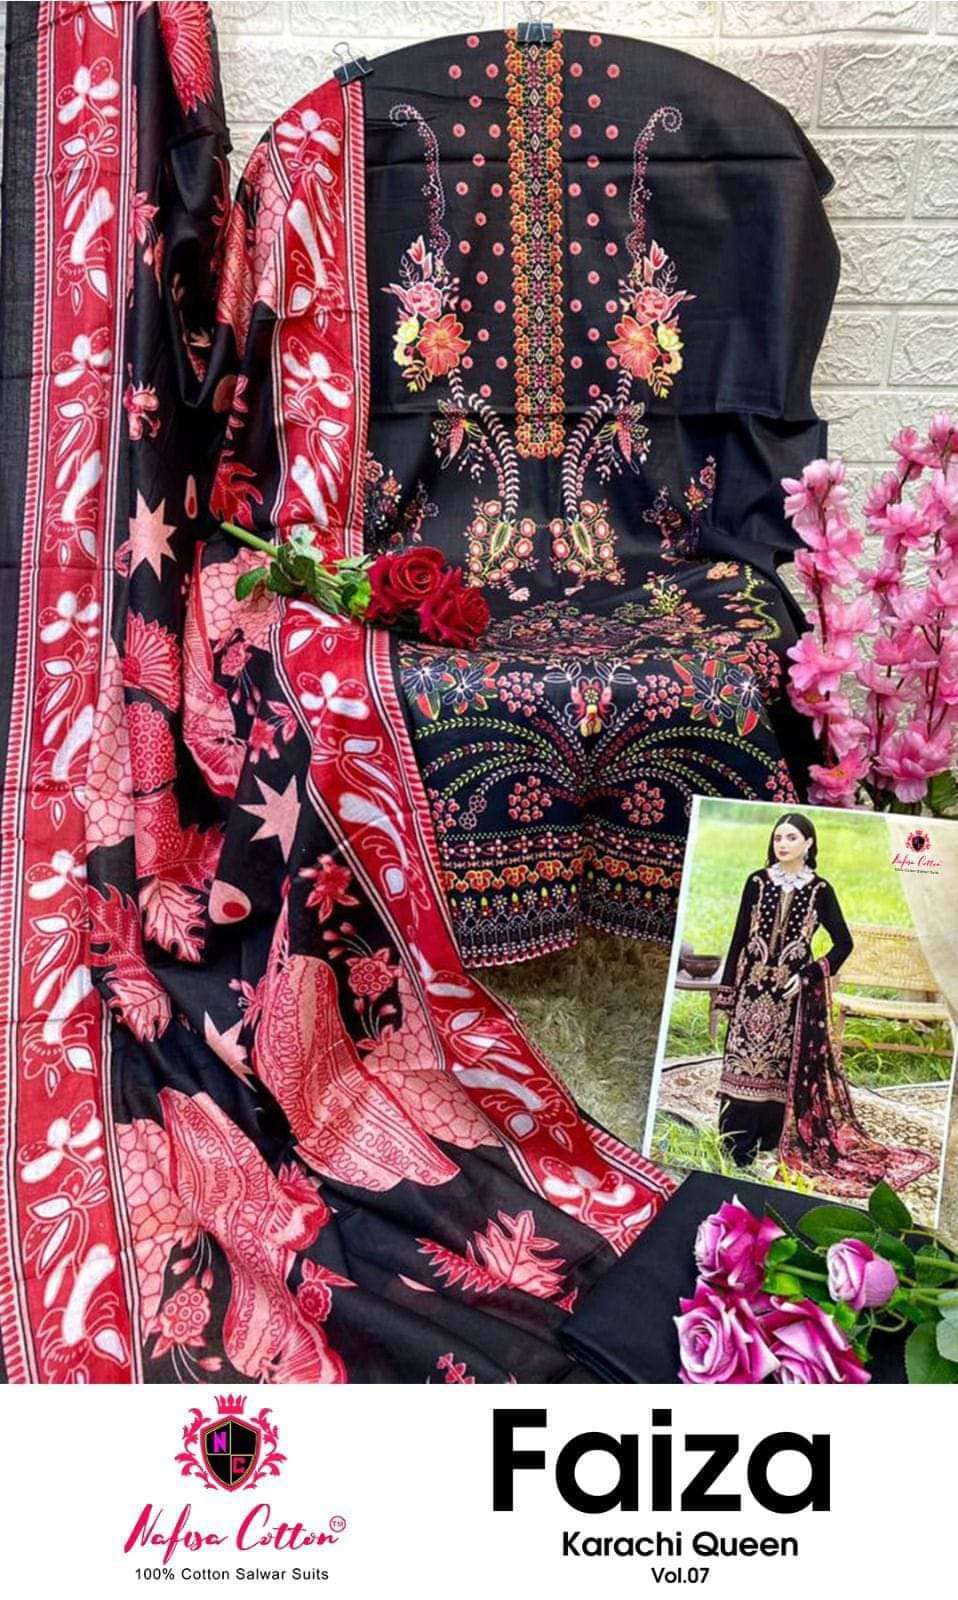 nafisa cotton faiza karachi queen vol 7 series 7001-7006 cotton suit 